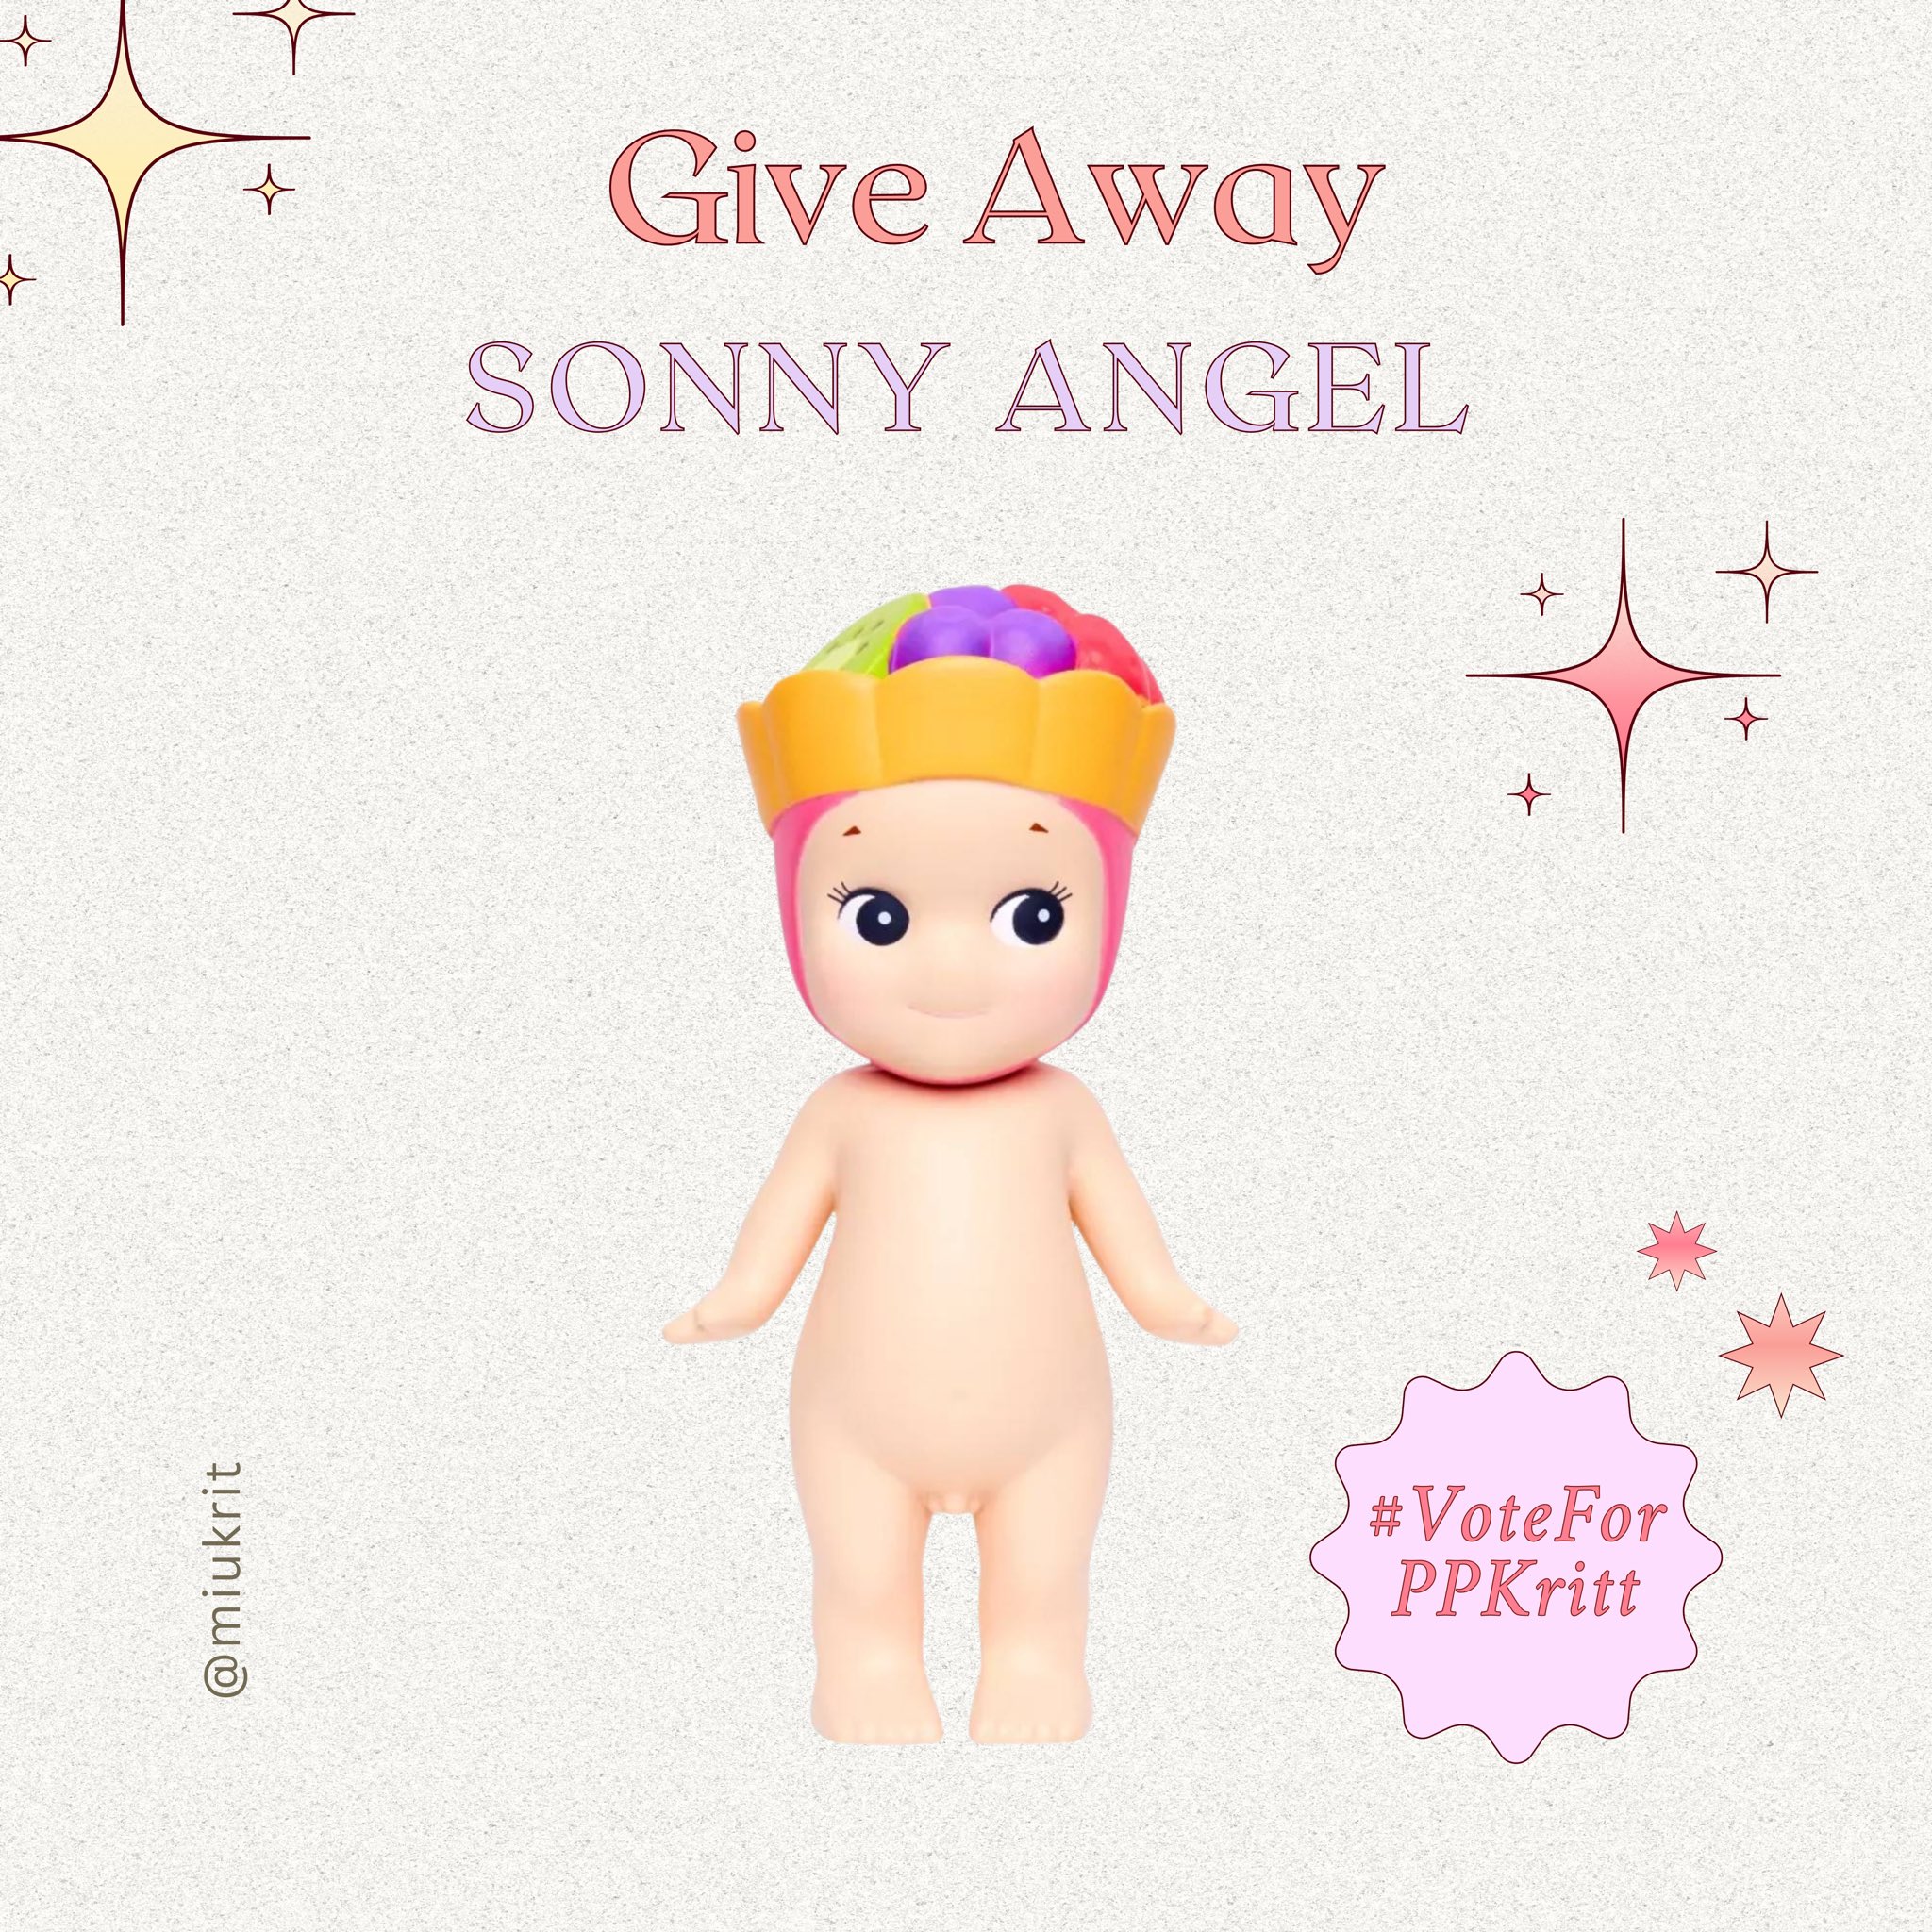 Sonny Angel keychains made by me ˚ʚ♡ɞ˚ : r/SonnyAngel